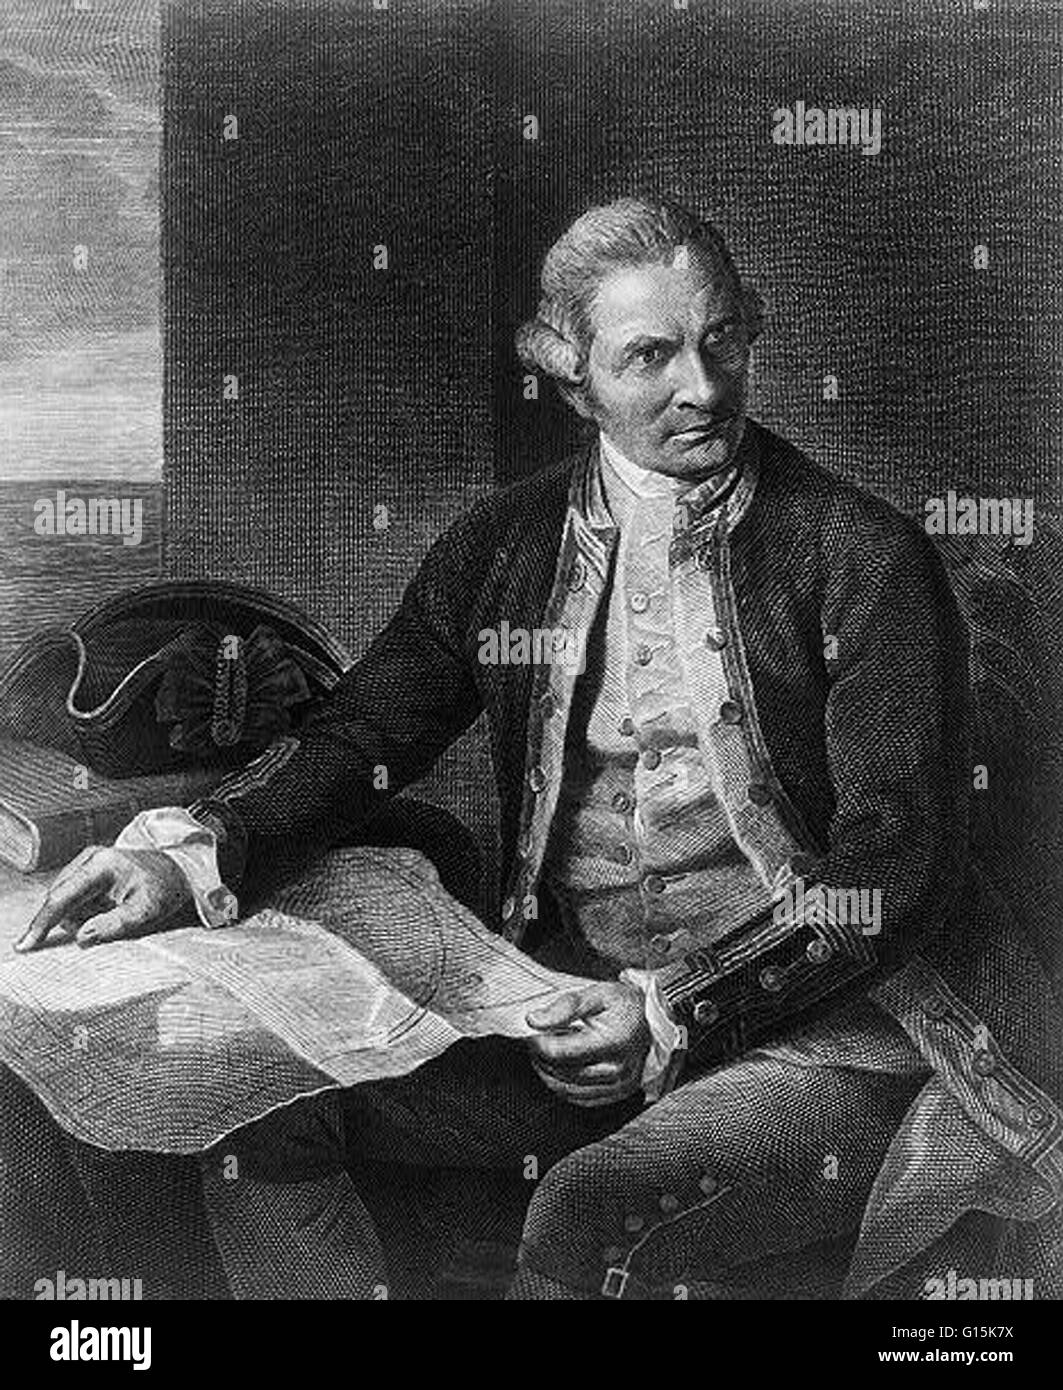 Il capitano James Cook (1728-1779) era un esploratore inglese, il navigatore e cartografo che in ultima analisi è salito al rango di capitano nella Royal Navy. Cuocere realizzato mappe dettagliate di Terranova prima di effettuare tre viaggi in Oceano Pacifico, durante la quale egli ac Foto Stock